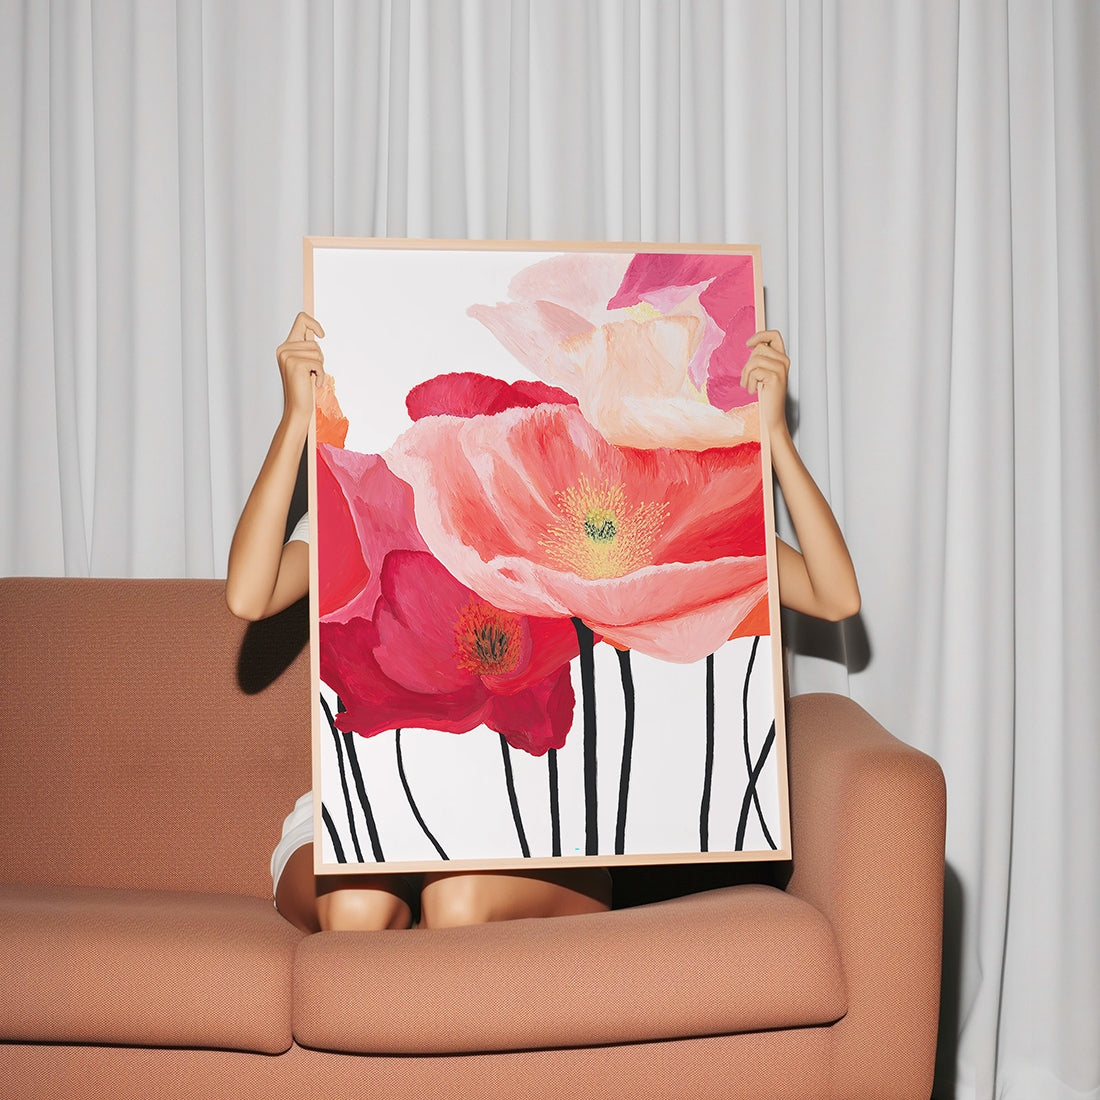 Vivid-Art-Print-Woman-holding-frame Danelle Messaike